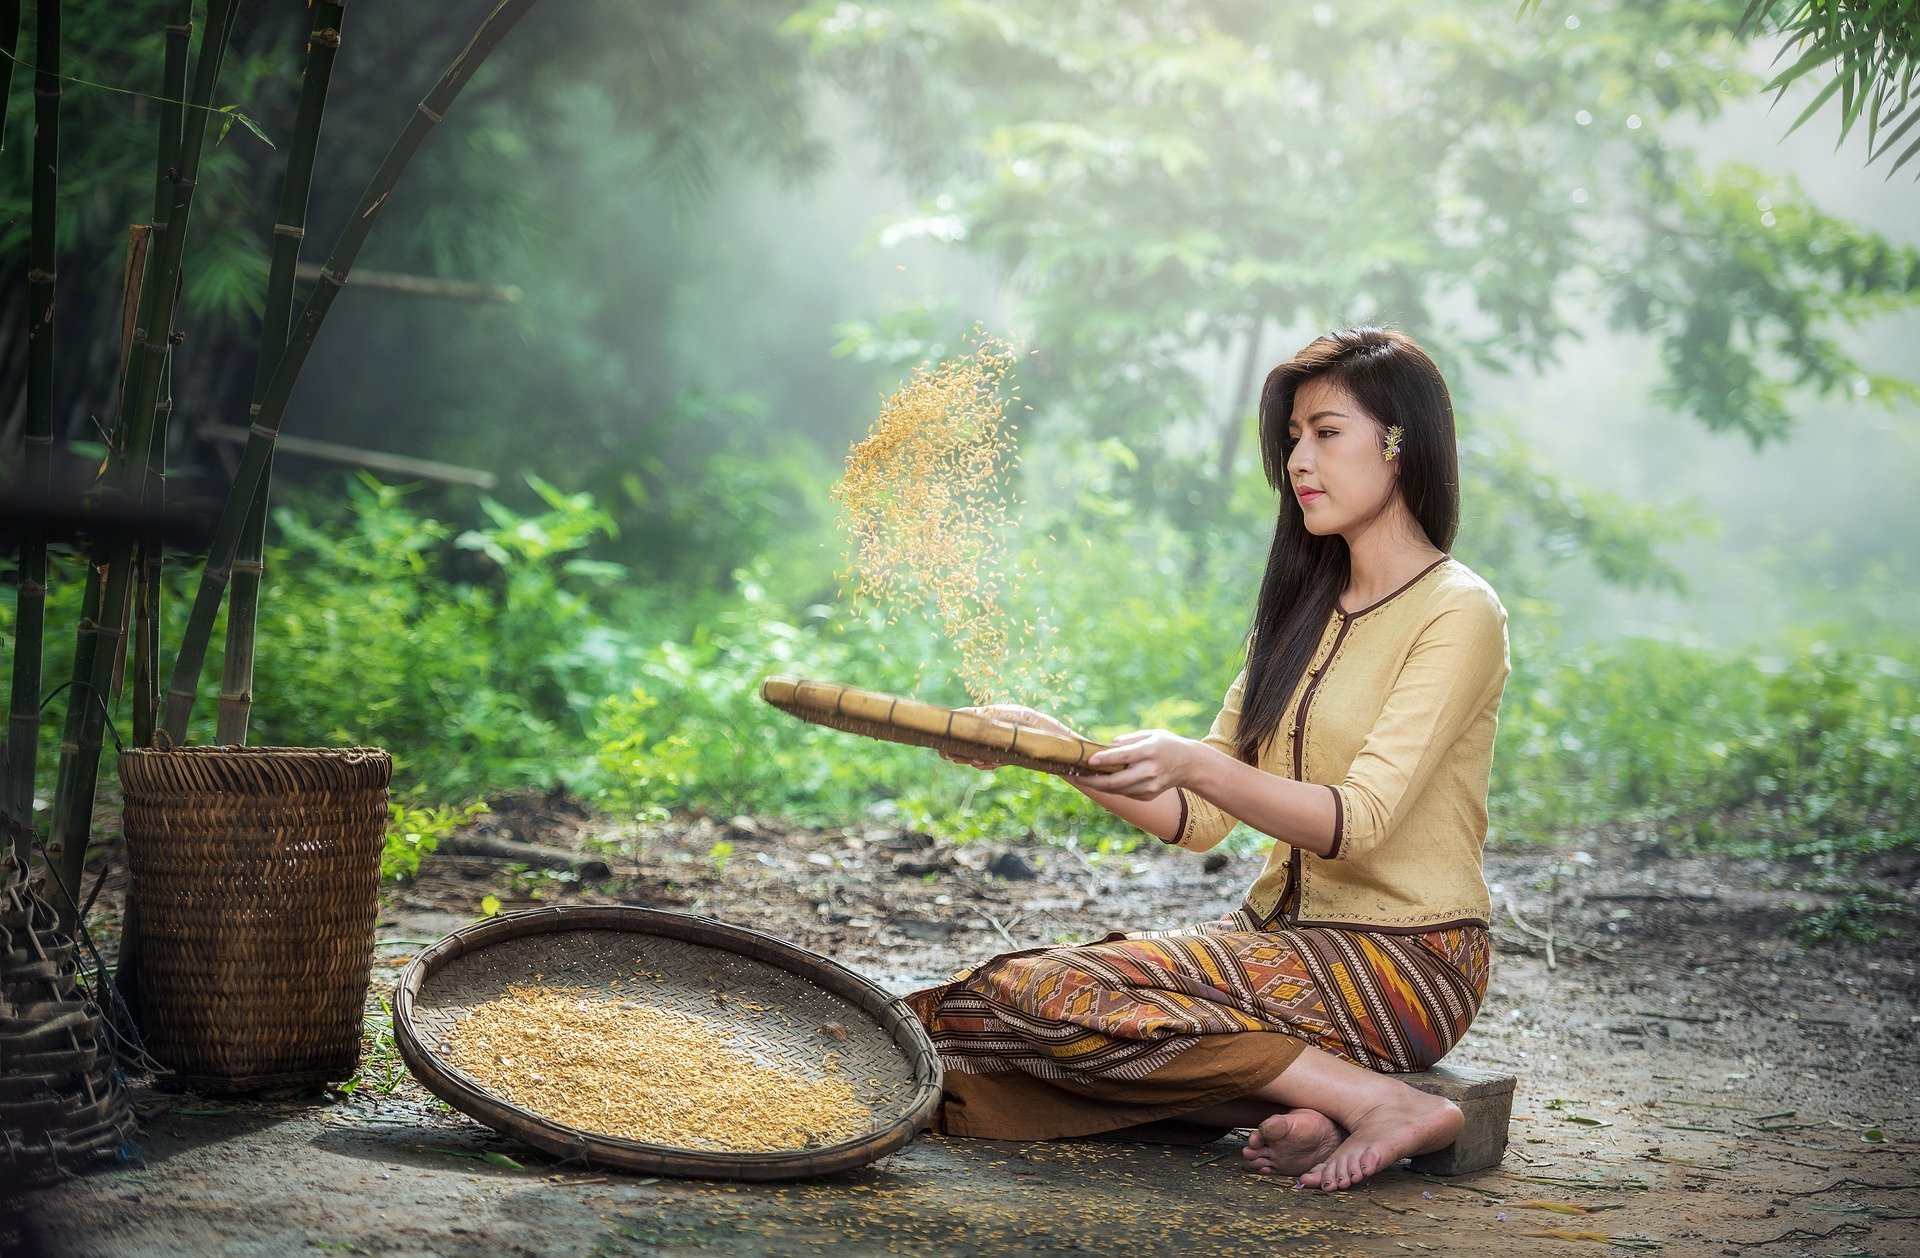 Mujer cosecha arroz. Fuente: Pixabay